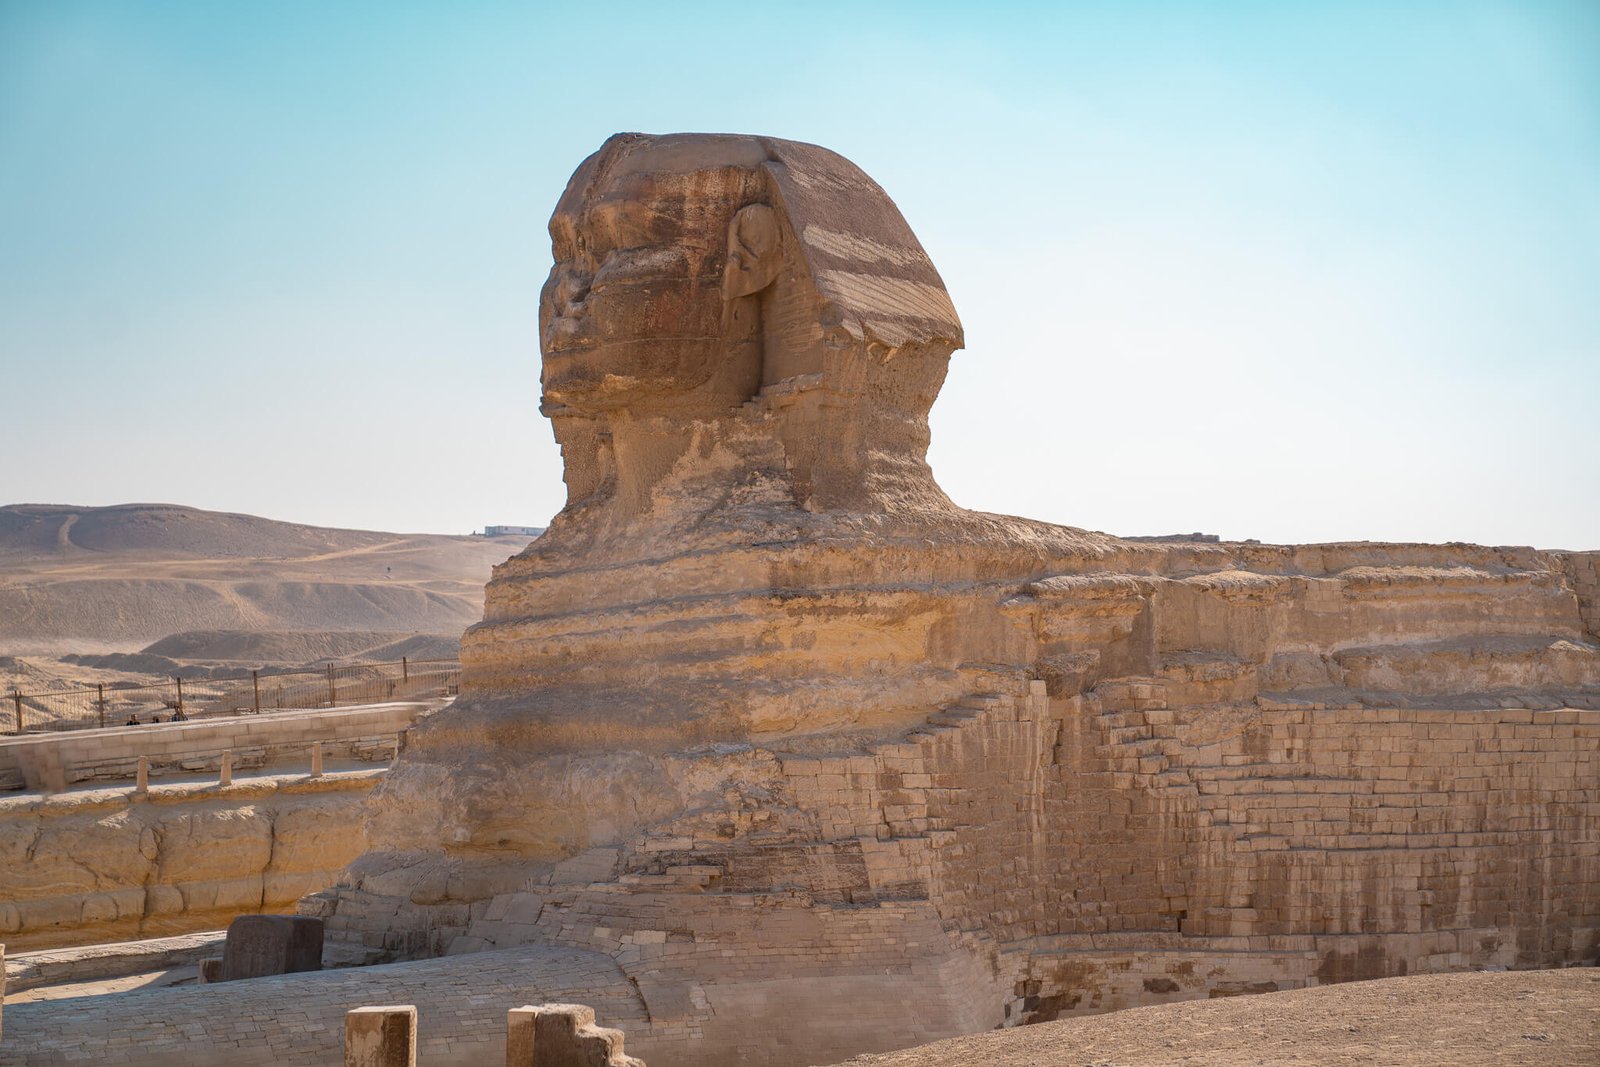 Sphinx, Pyramids of Egypt in Giza